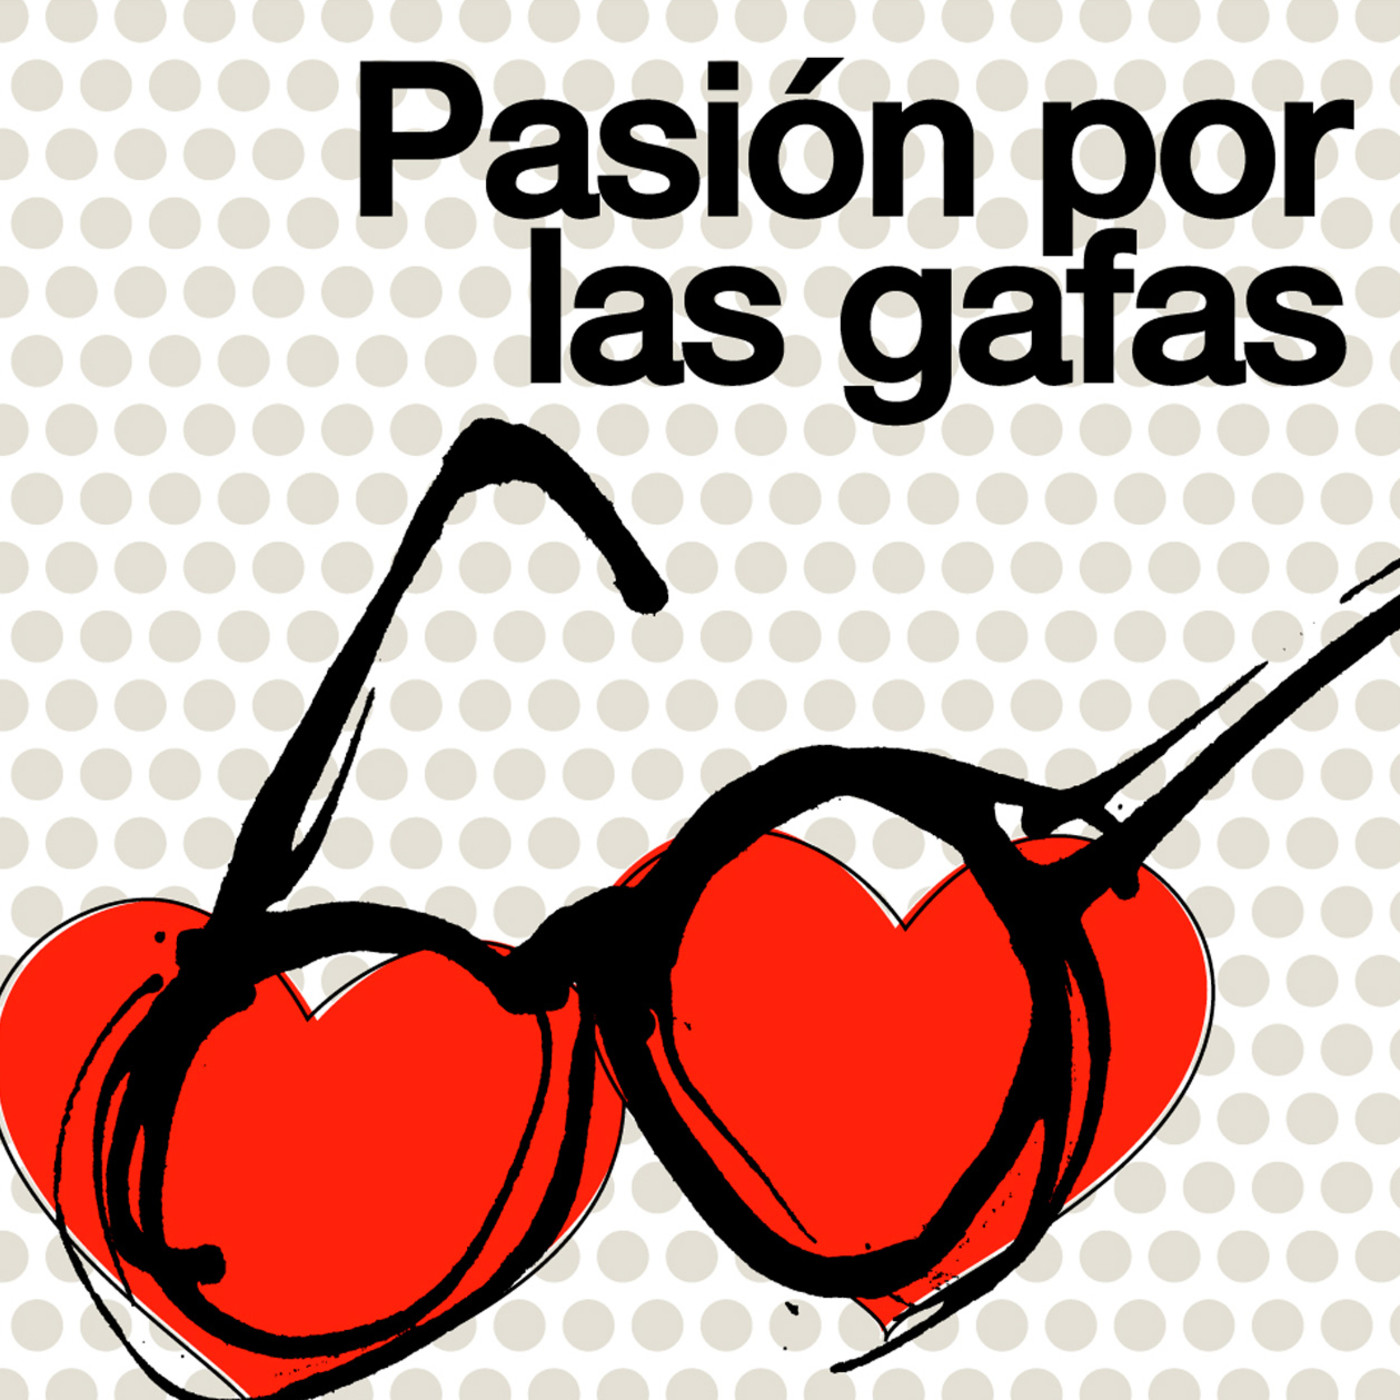 Gafas Mouet, apostar por el diseño y lo auténtico desde Valencia